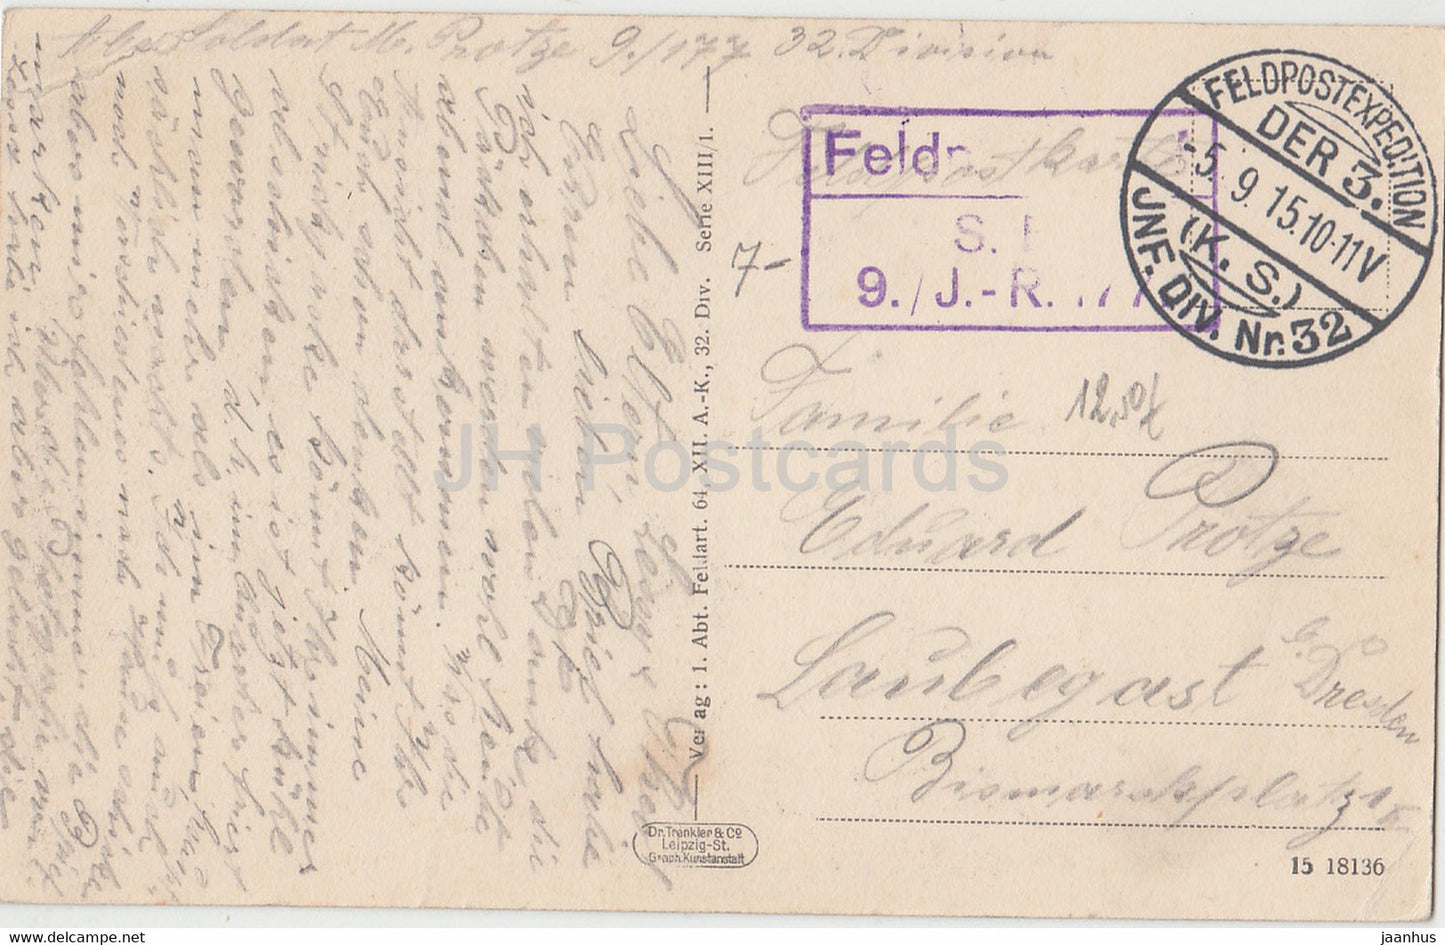 1 Abt Feldart 64 XII AK 32 Div. - Serie XIII - Feldpost - alte Postkarte - 1915 - gebraucht